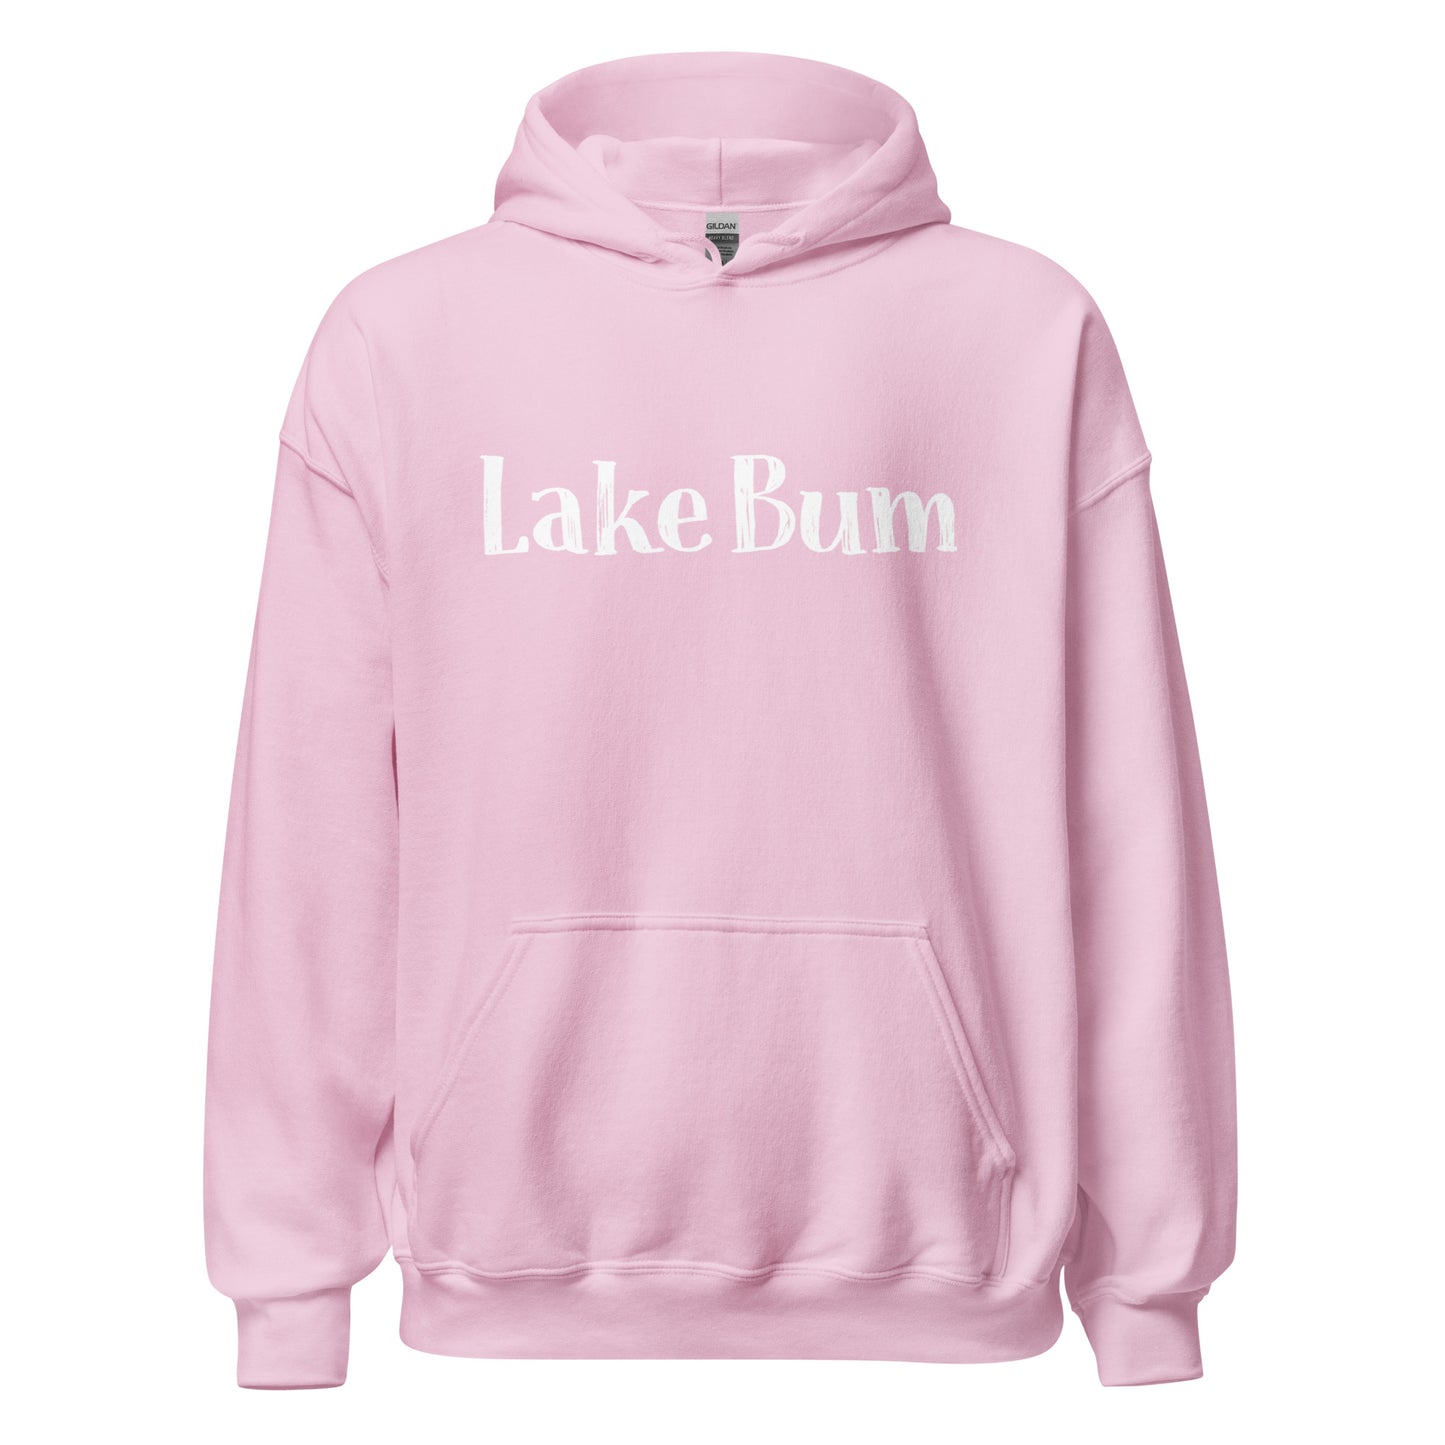 Lake Bum Unisex Hoodie Sweatshirt